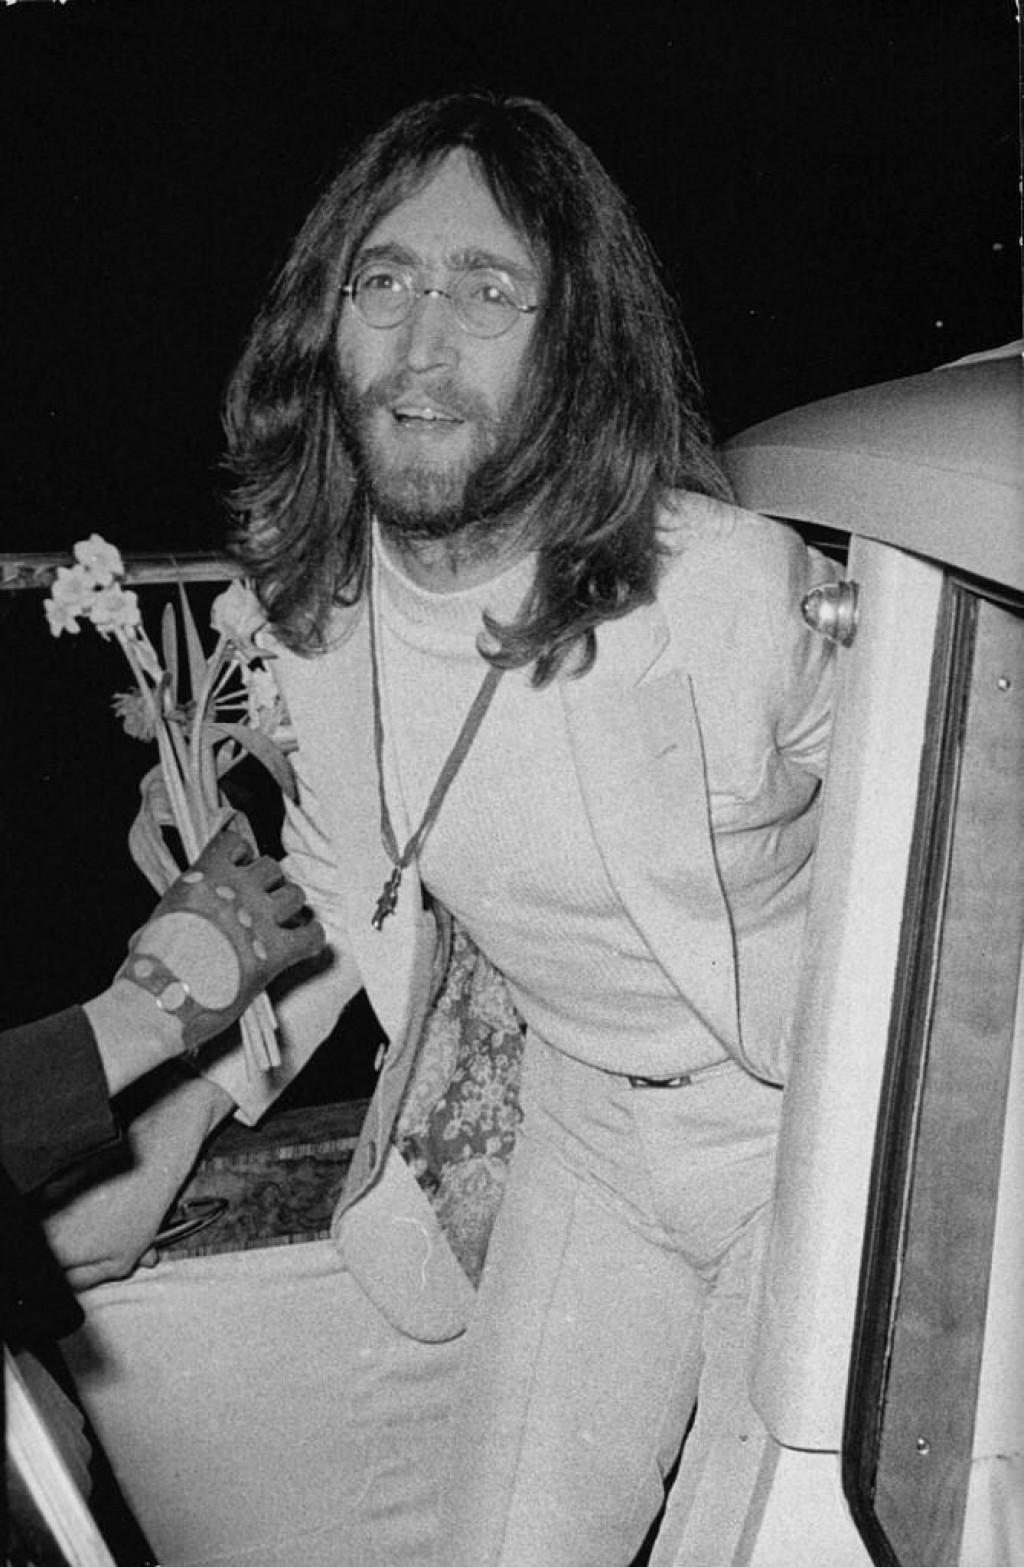 &lt;p&gt;John Lennon&lt;/p&gt;